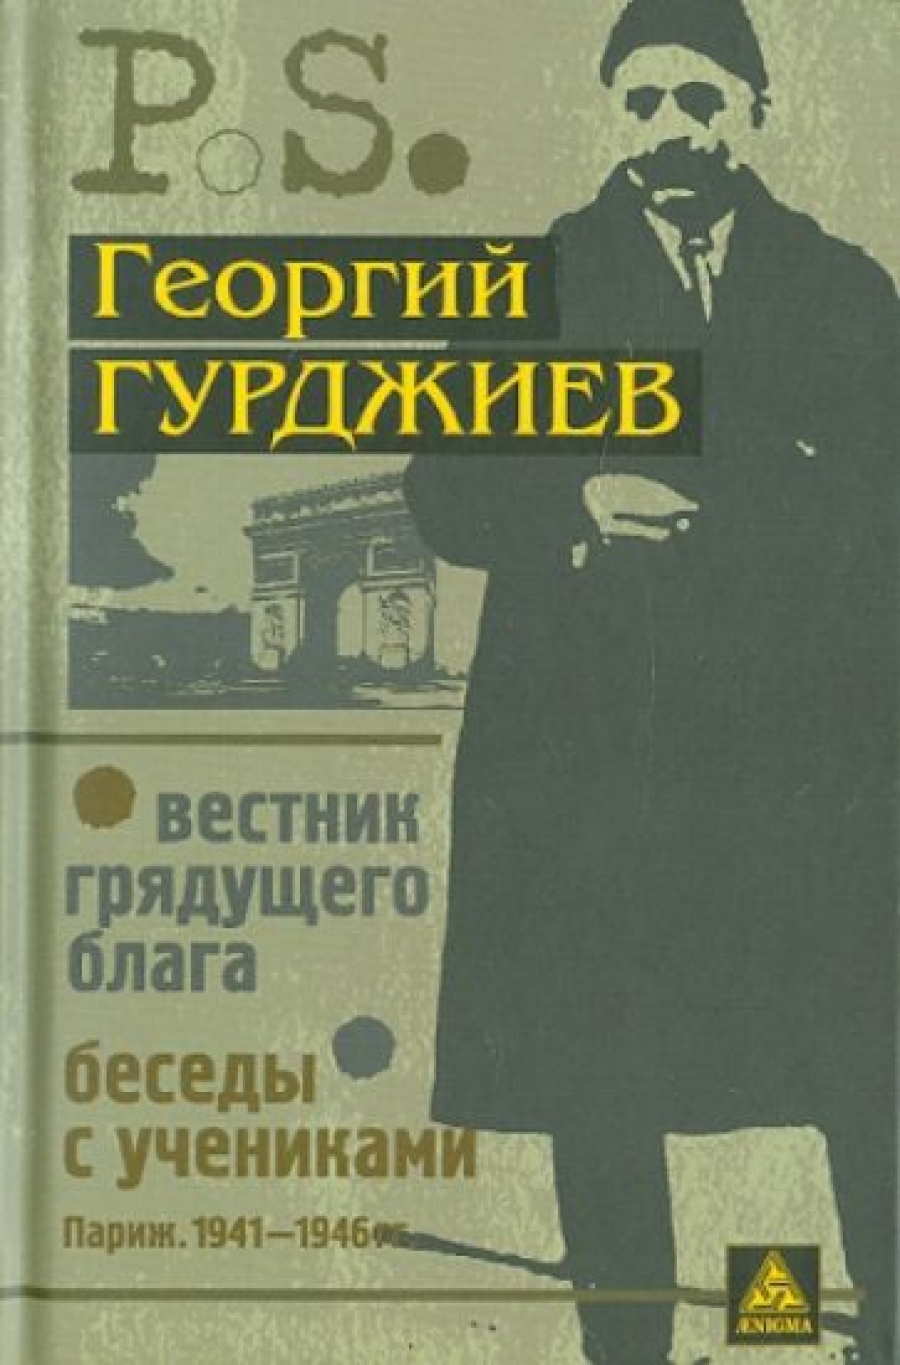  ..    (. 1933 .).    (. 1941-1946..) 